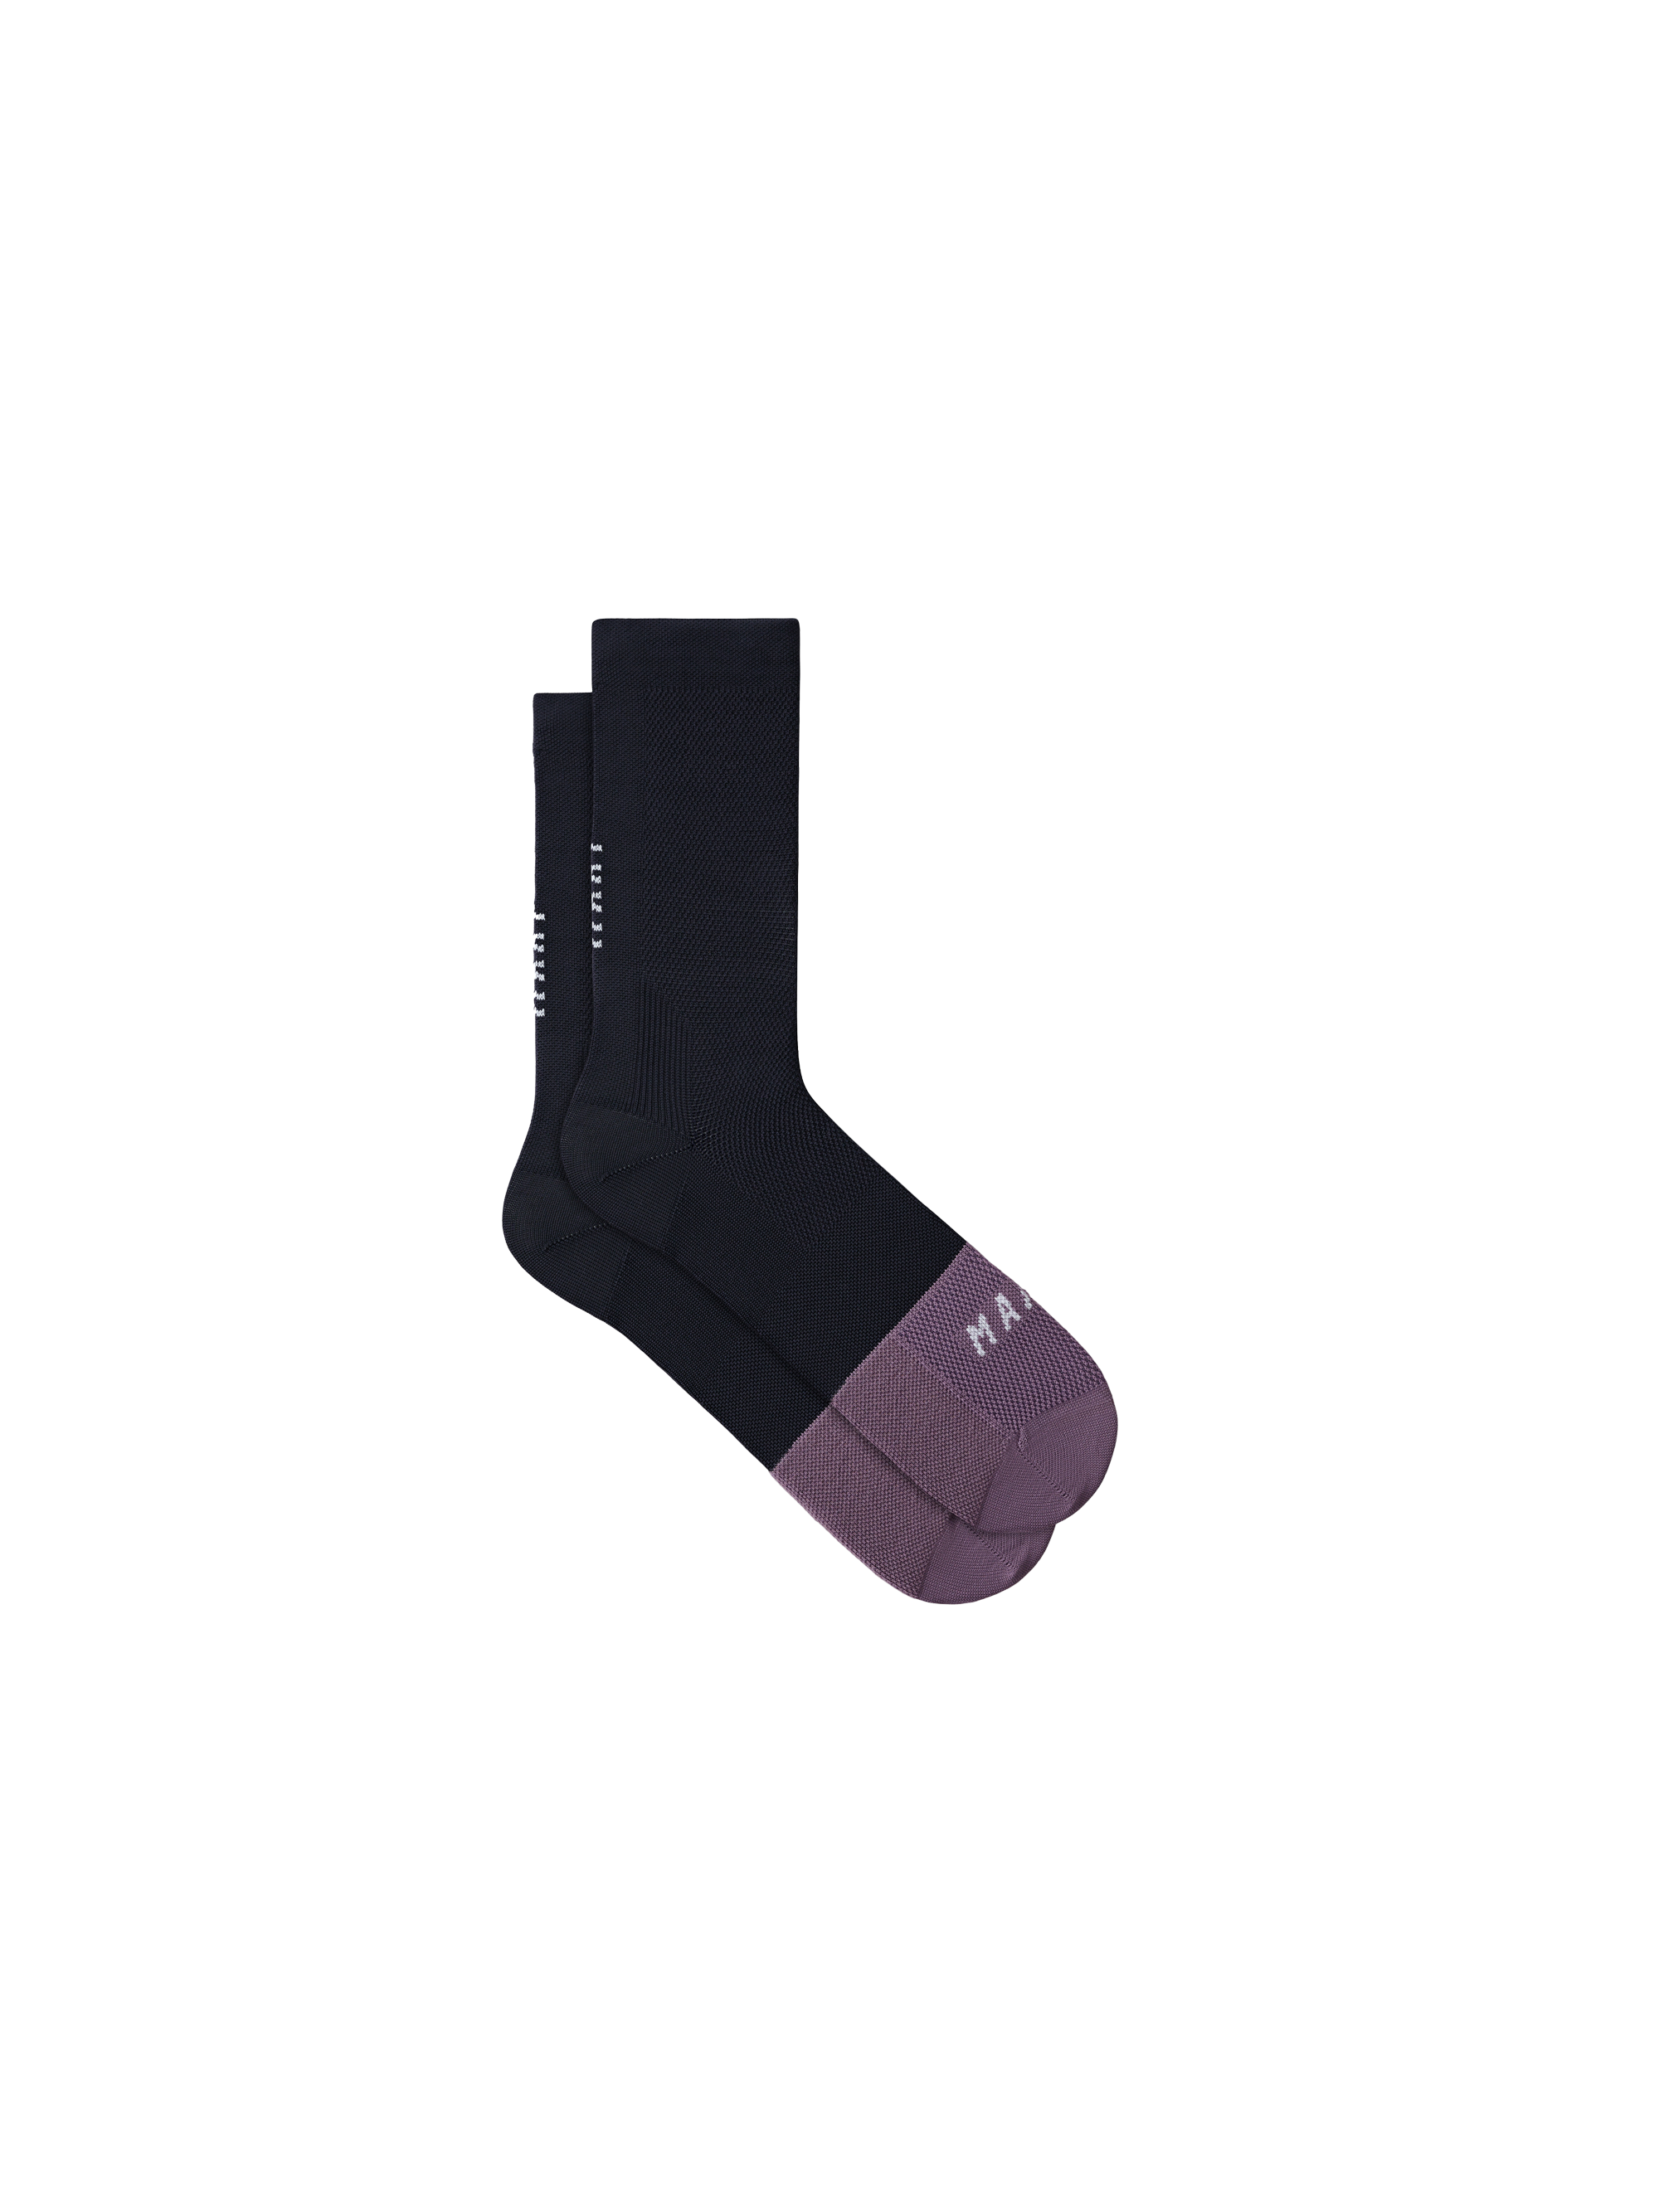 Division Sock